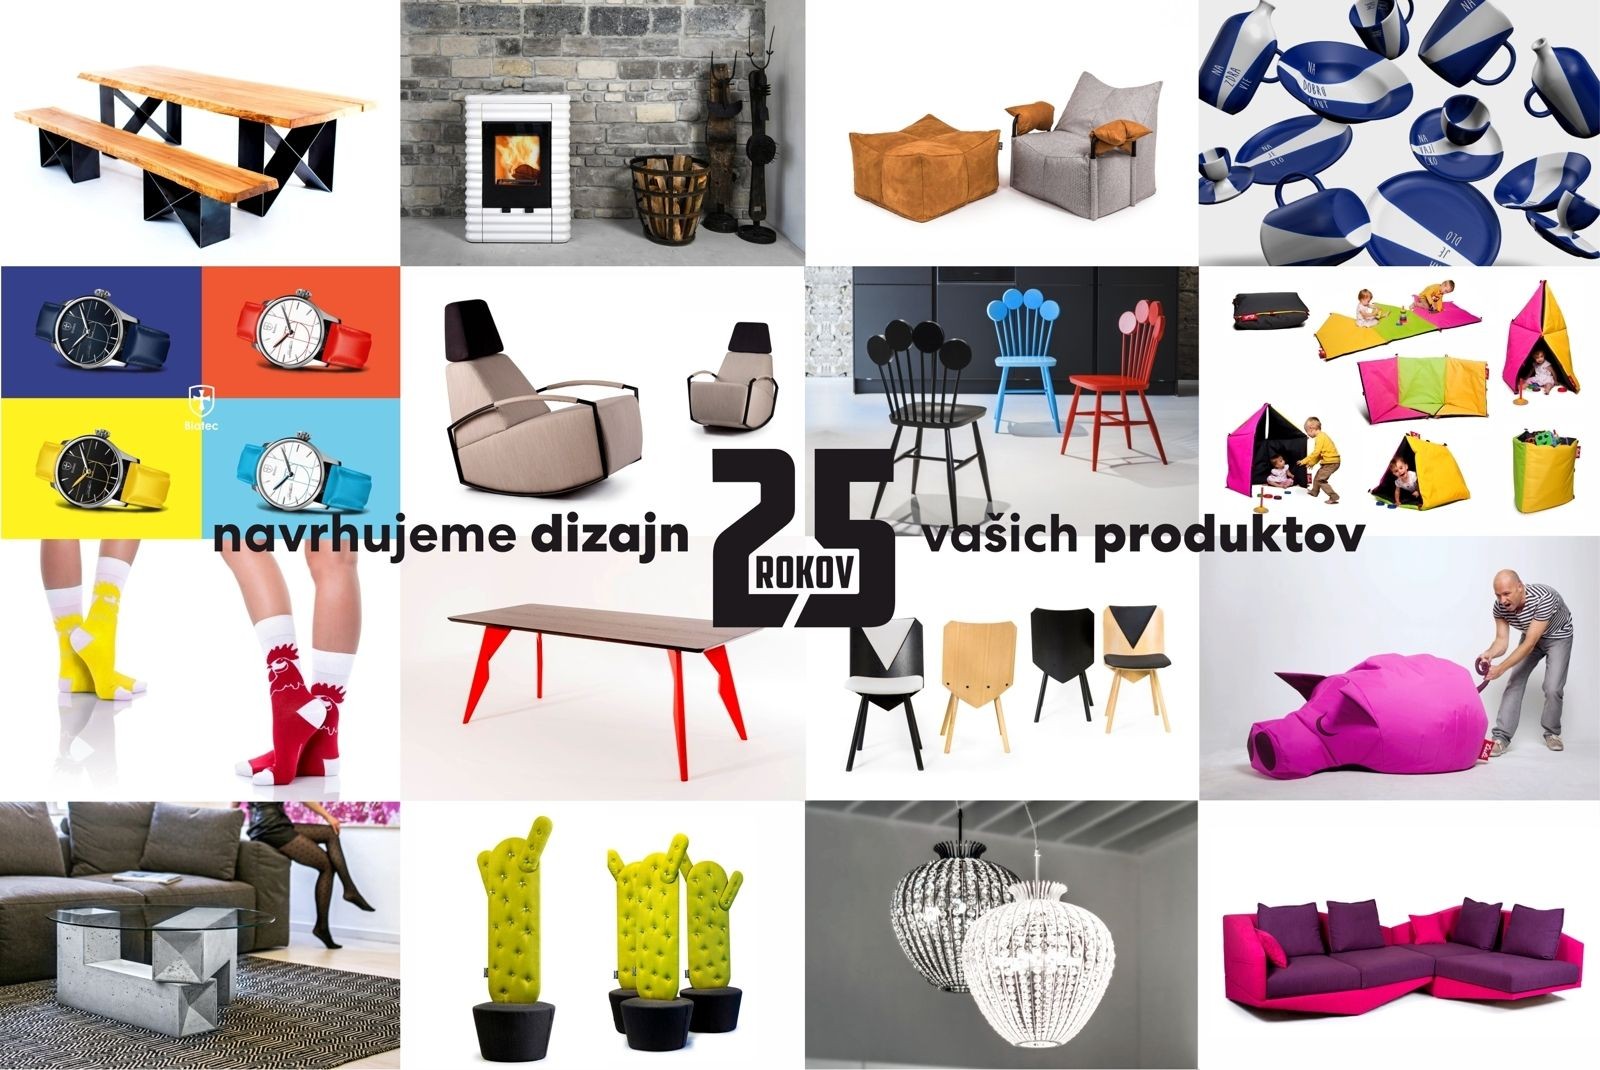 návrh produktov, dizajn nábytku, Product design, 3D navrh produktu, produktový design, Staško dizajn, produktový dizajnér, nábytkový dizajnér,